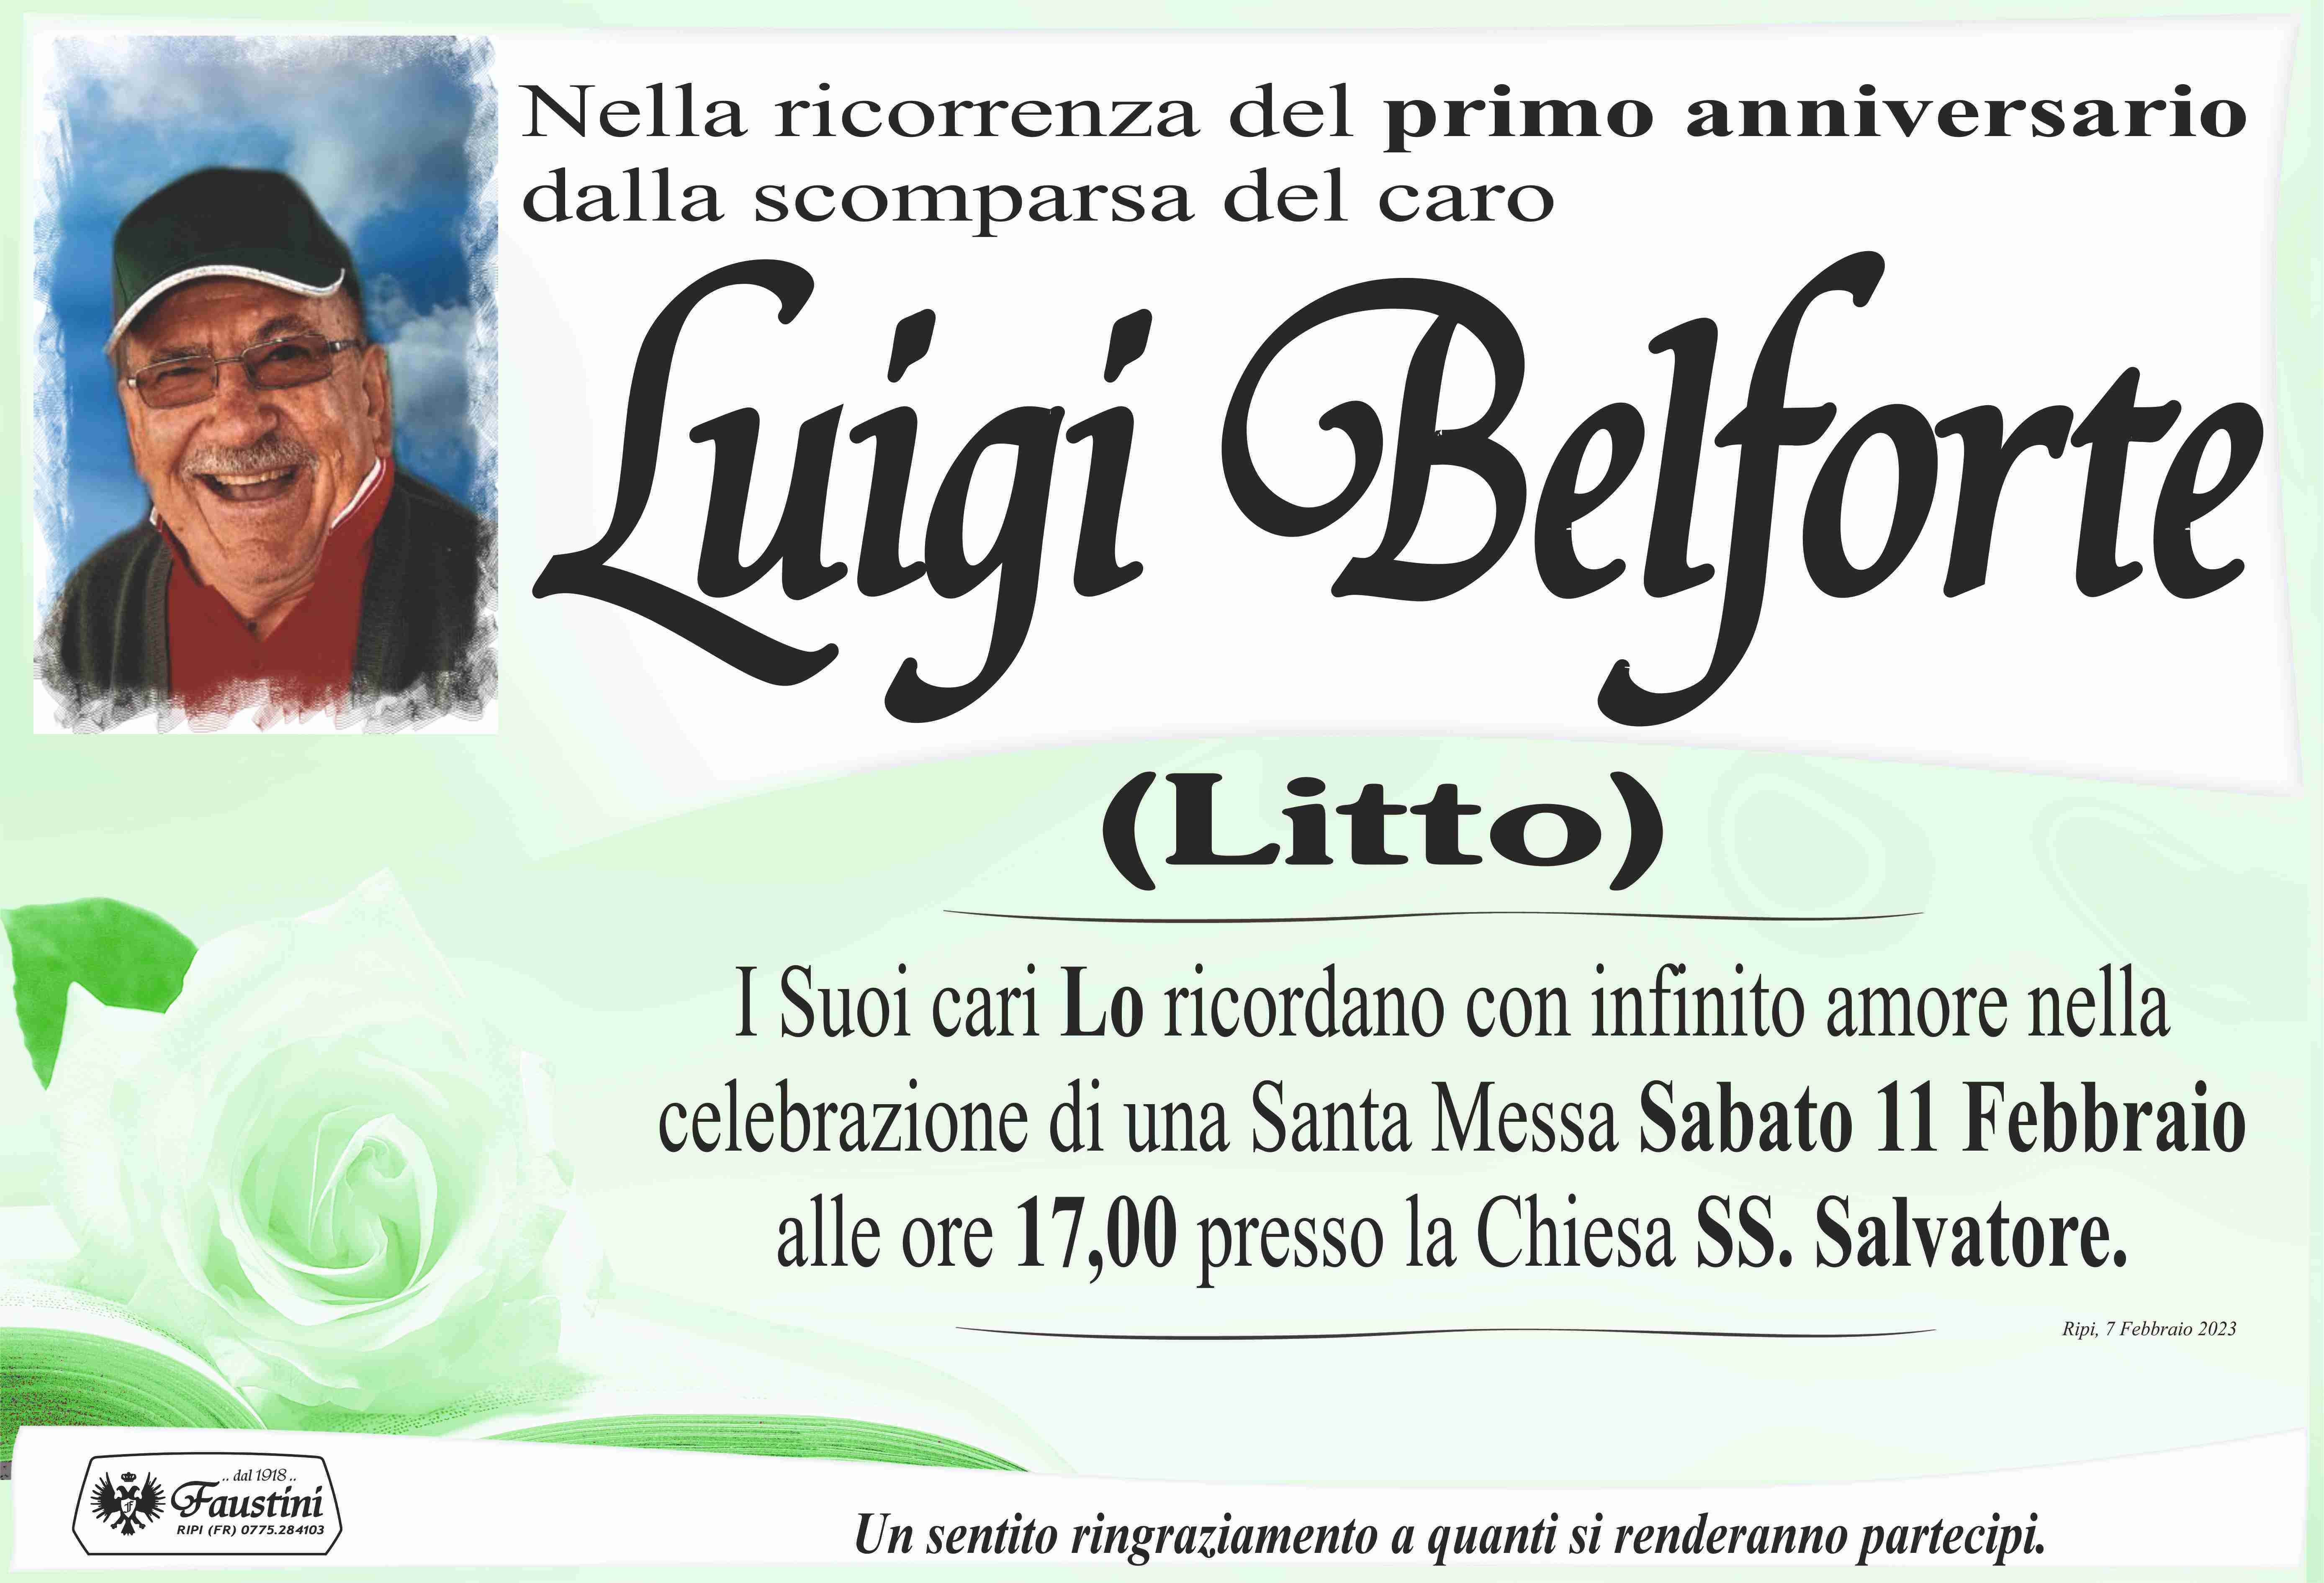 Luigi Belforte (Litto)